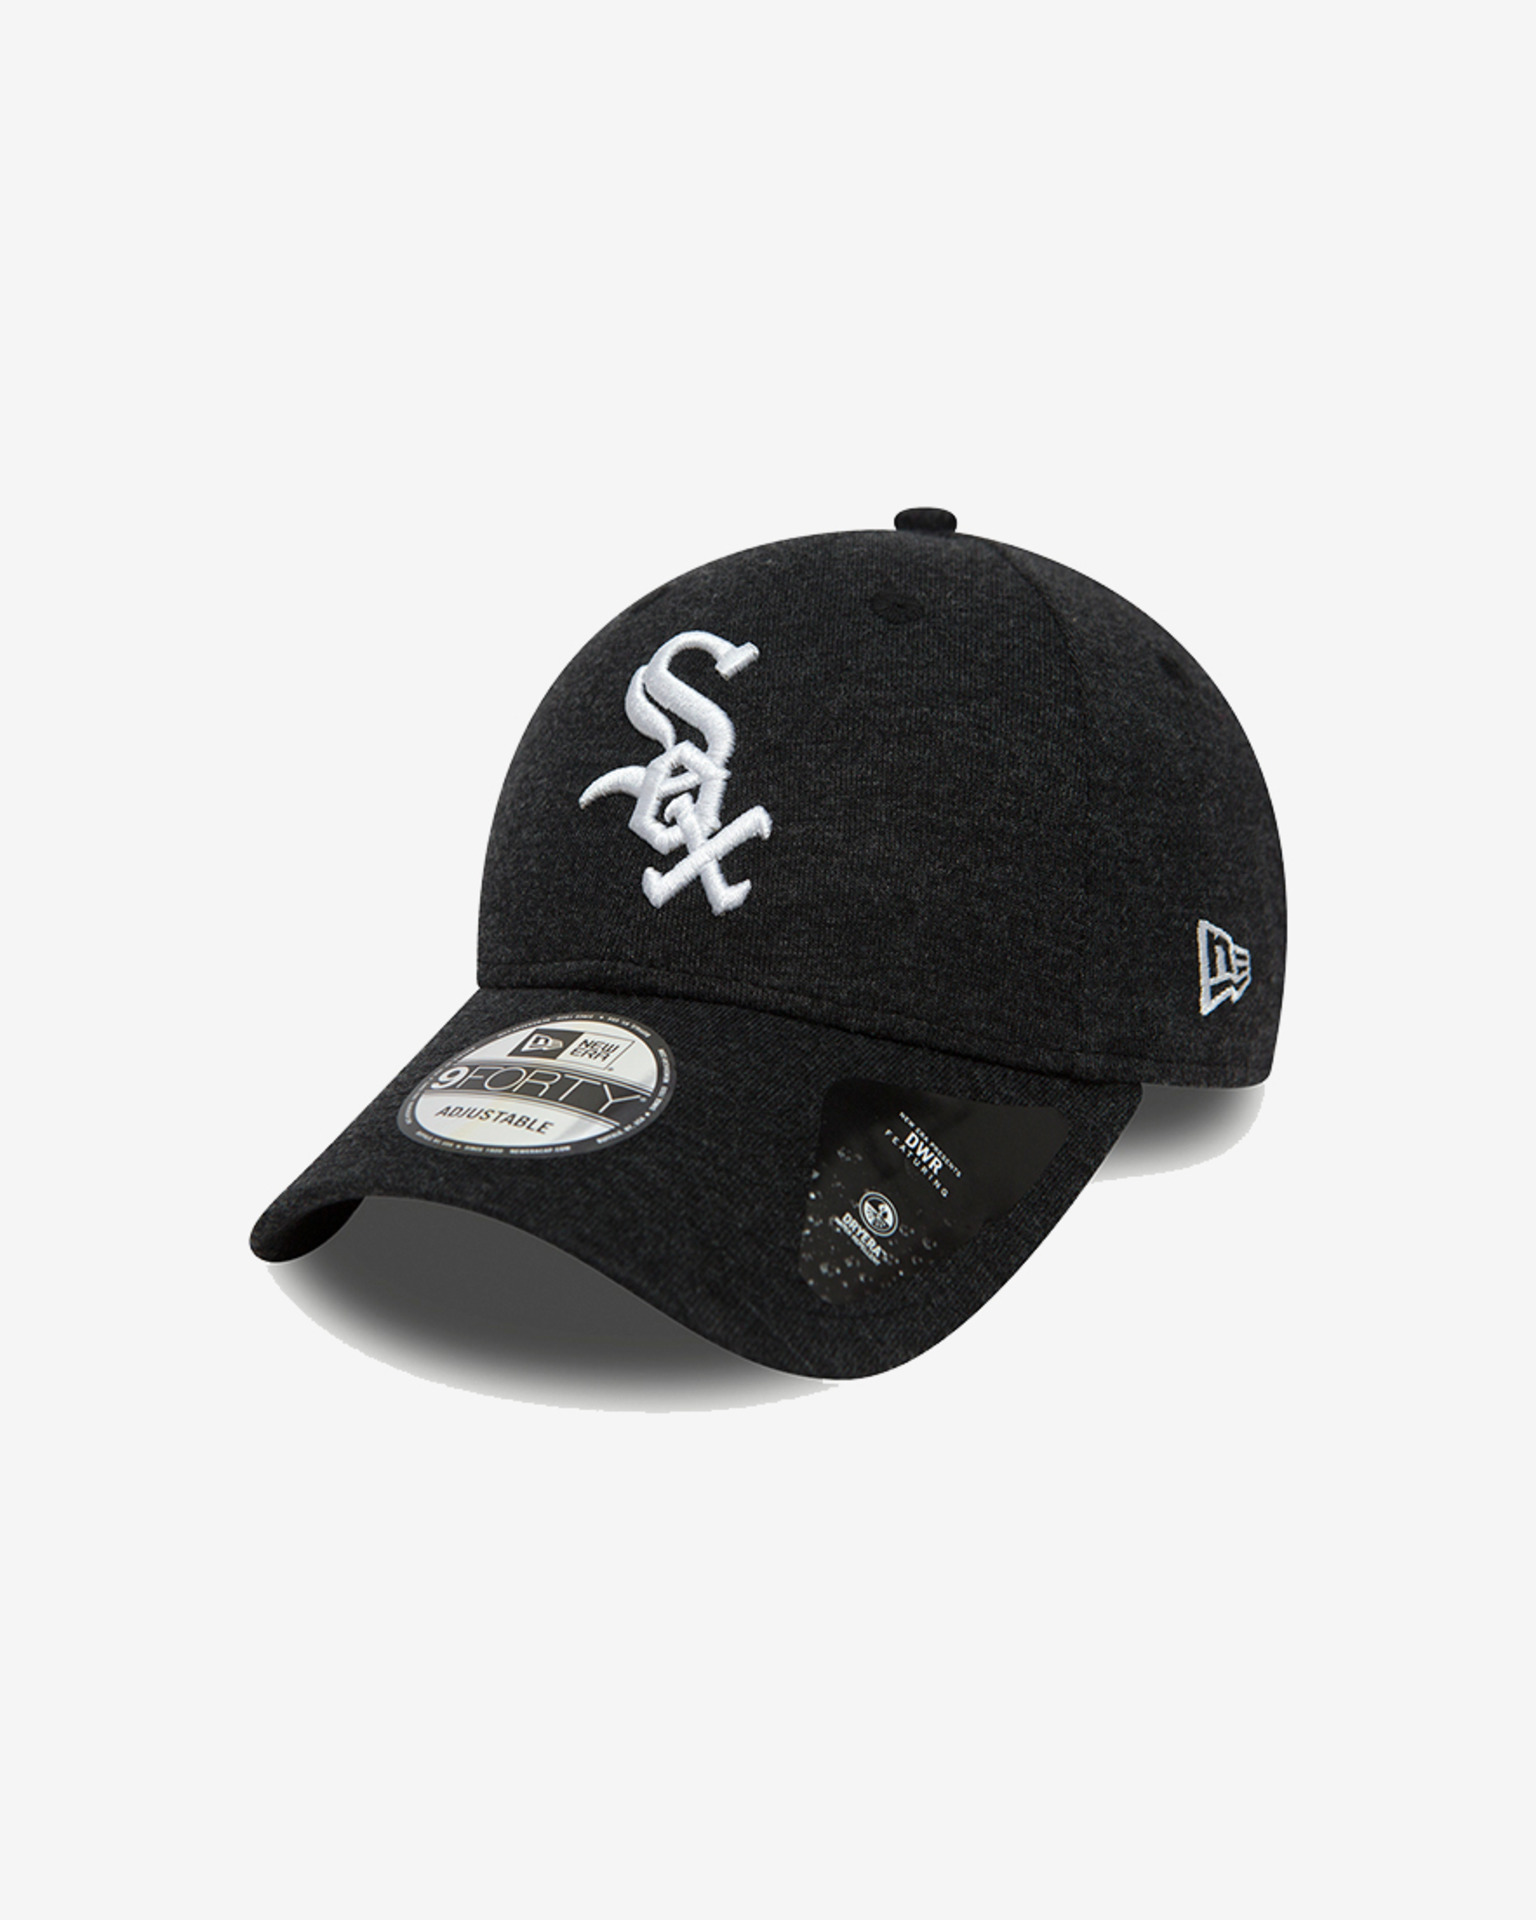 New Era CHICAGO WHITE SOX BASEBALL CAP